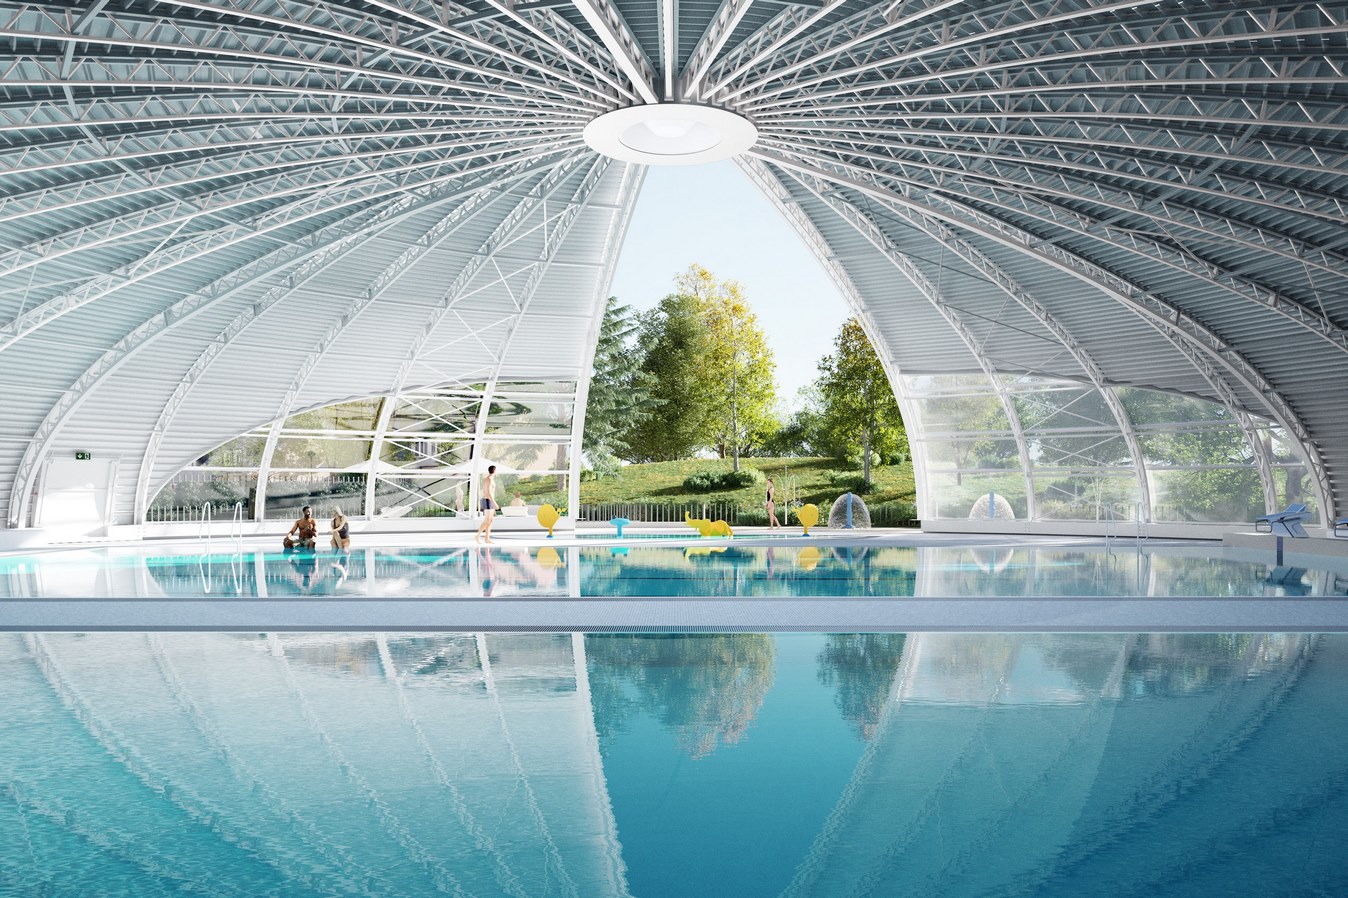 Réhabilitation et extension de la piscine tournesol - Achicourt (62) - Z Architecture - perspective halle bassin